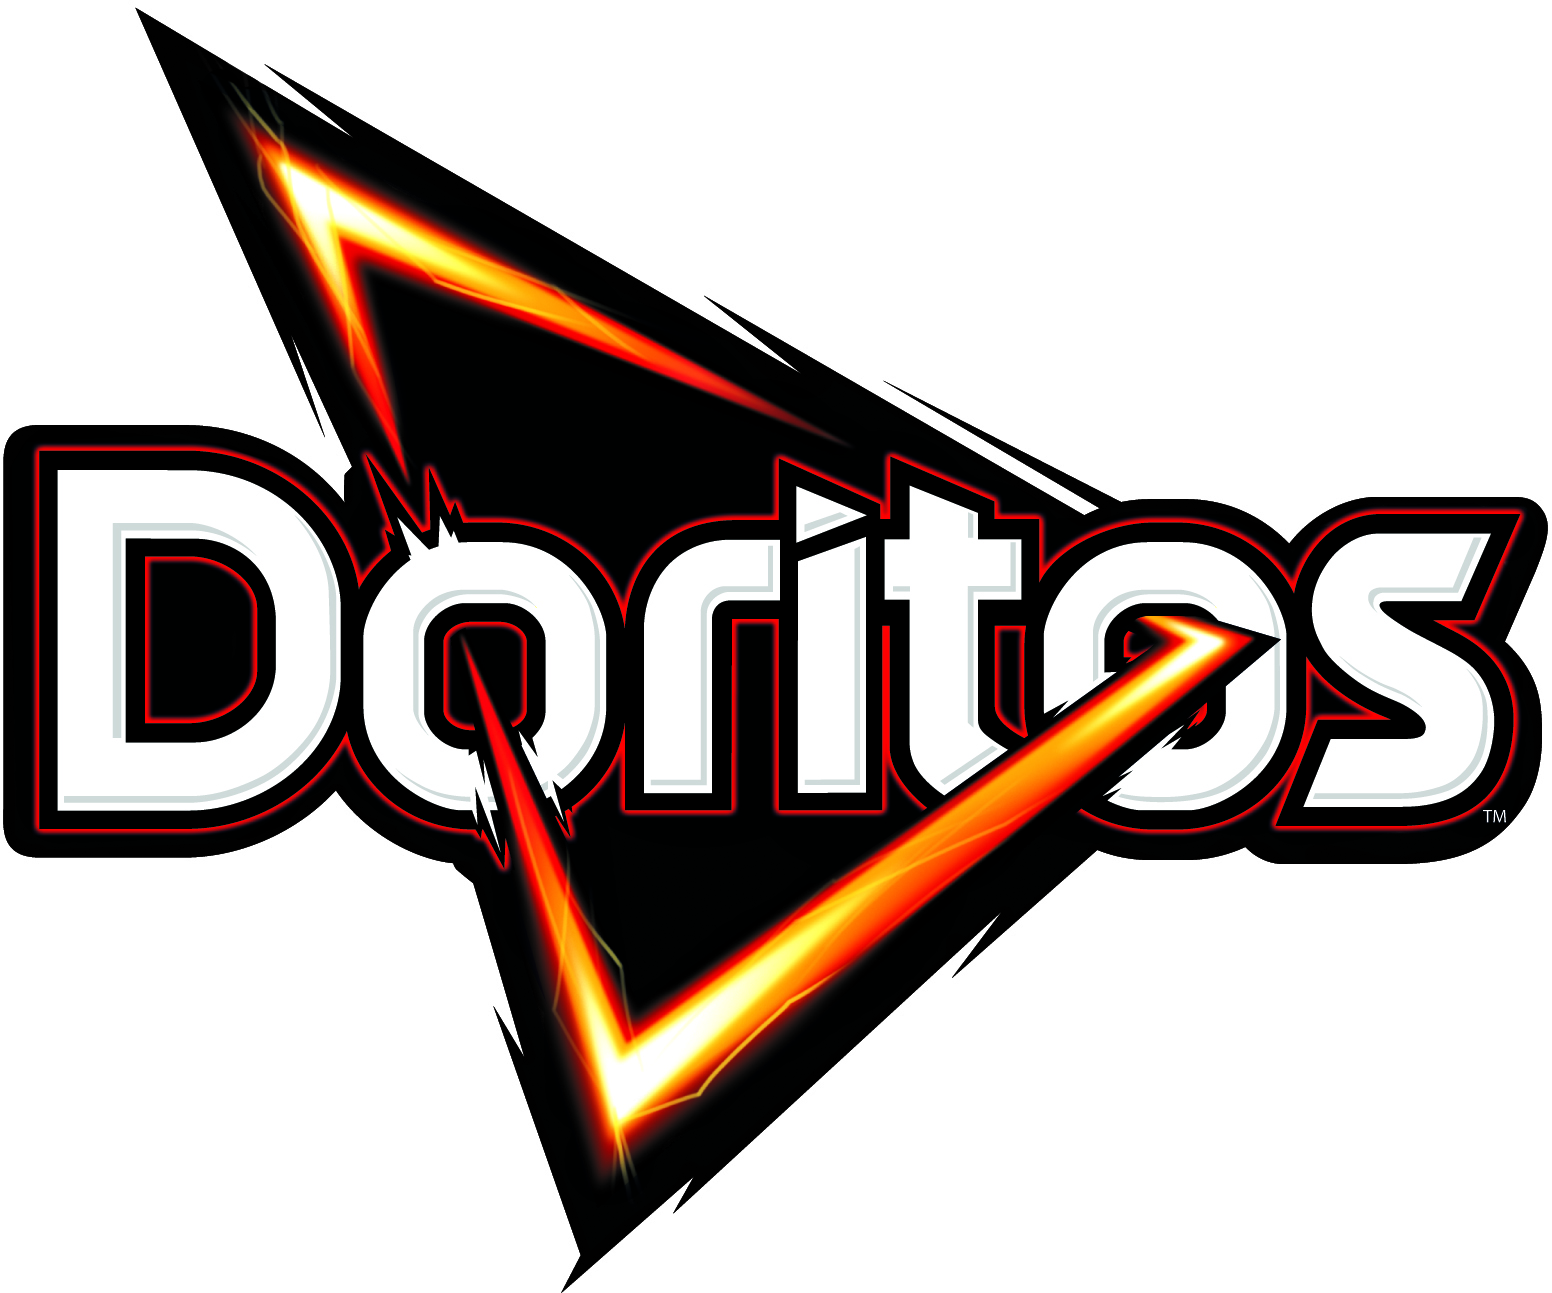 Doritos logo font please.